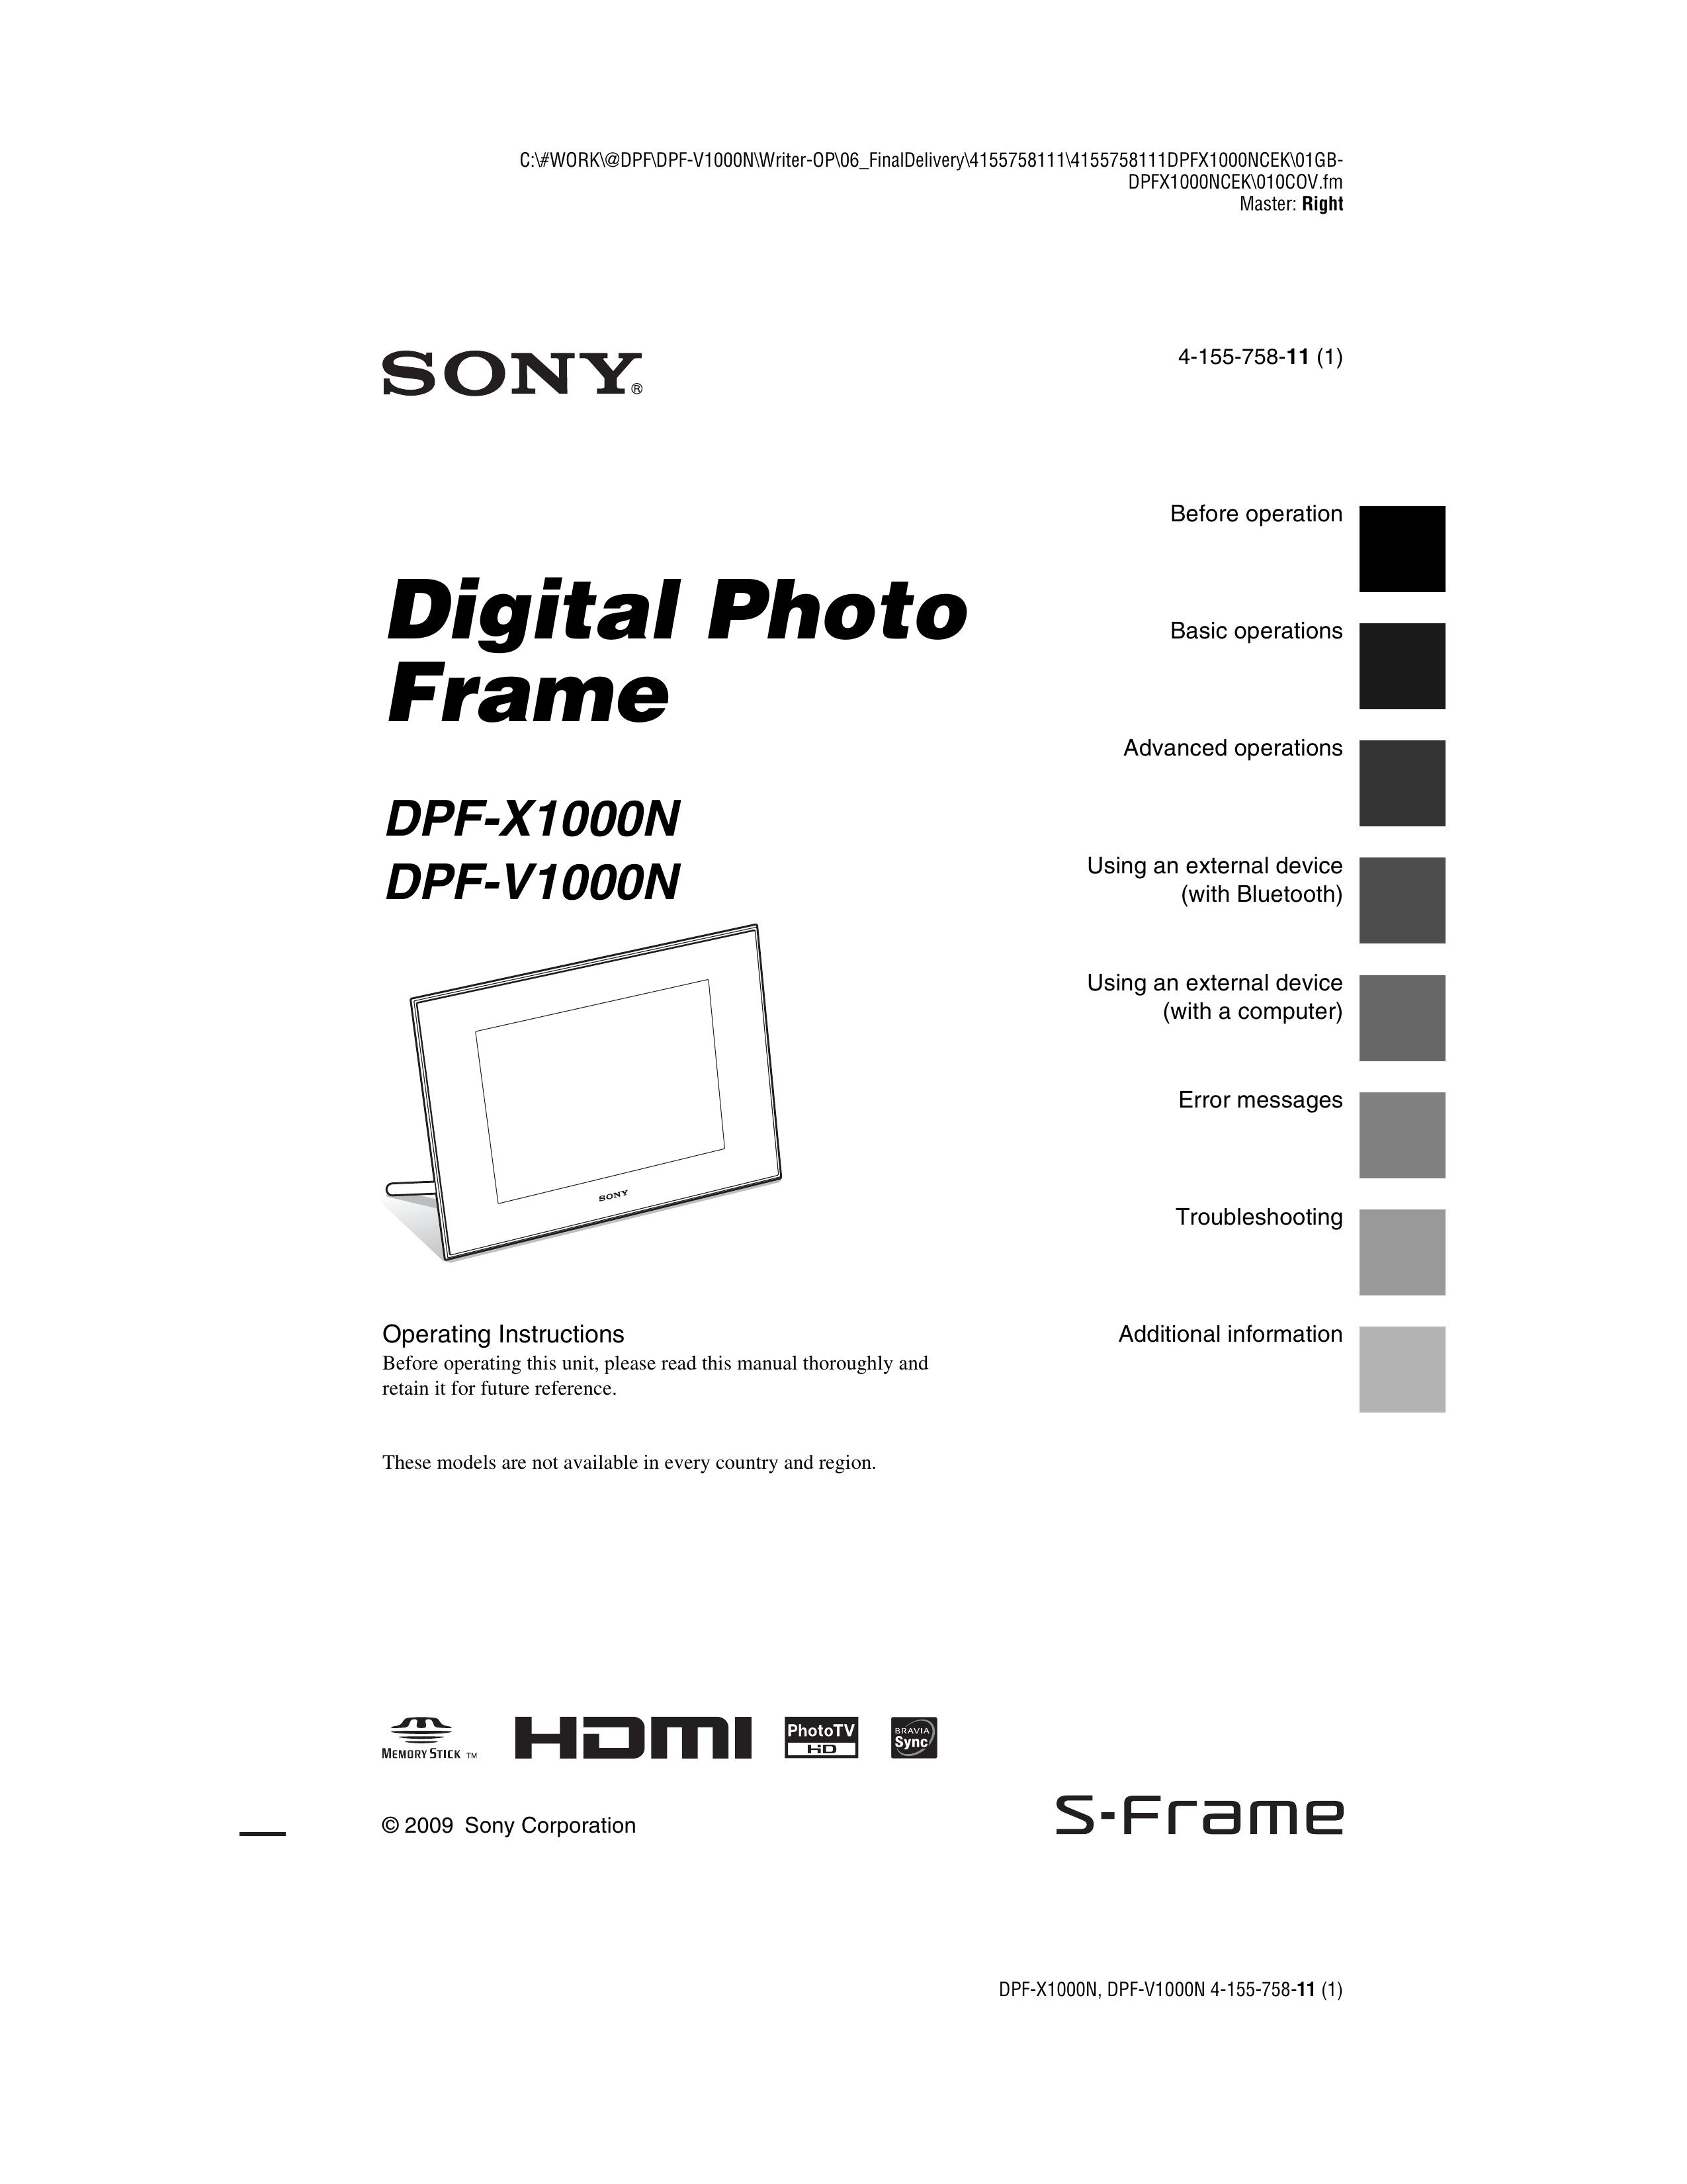 Sony DPF-X1000N Digital Photo Frame User Manual